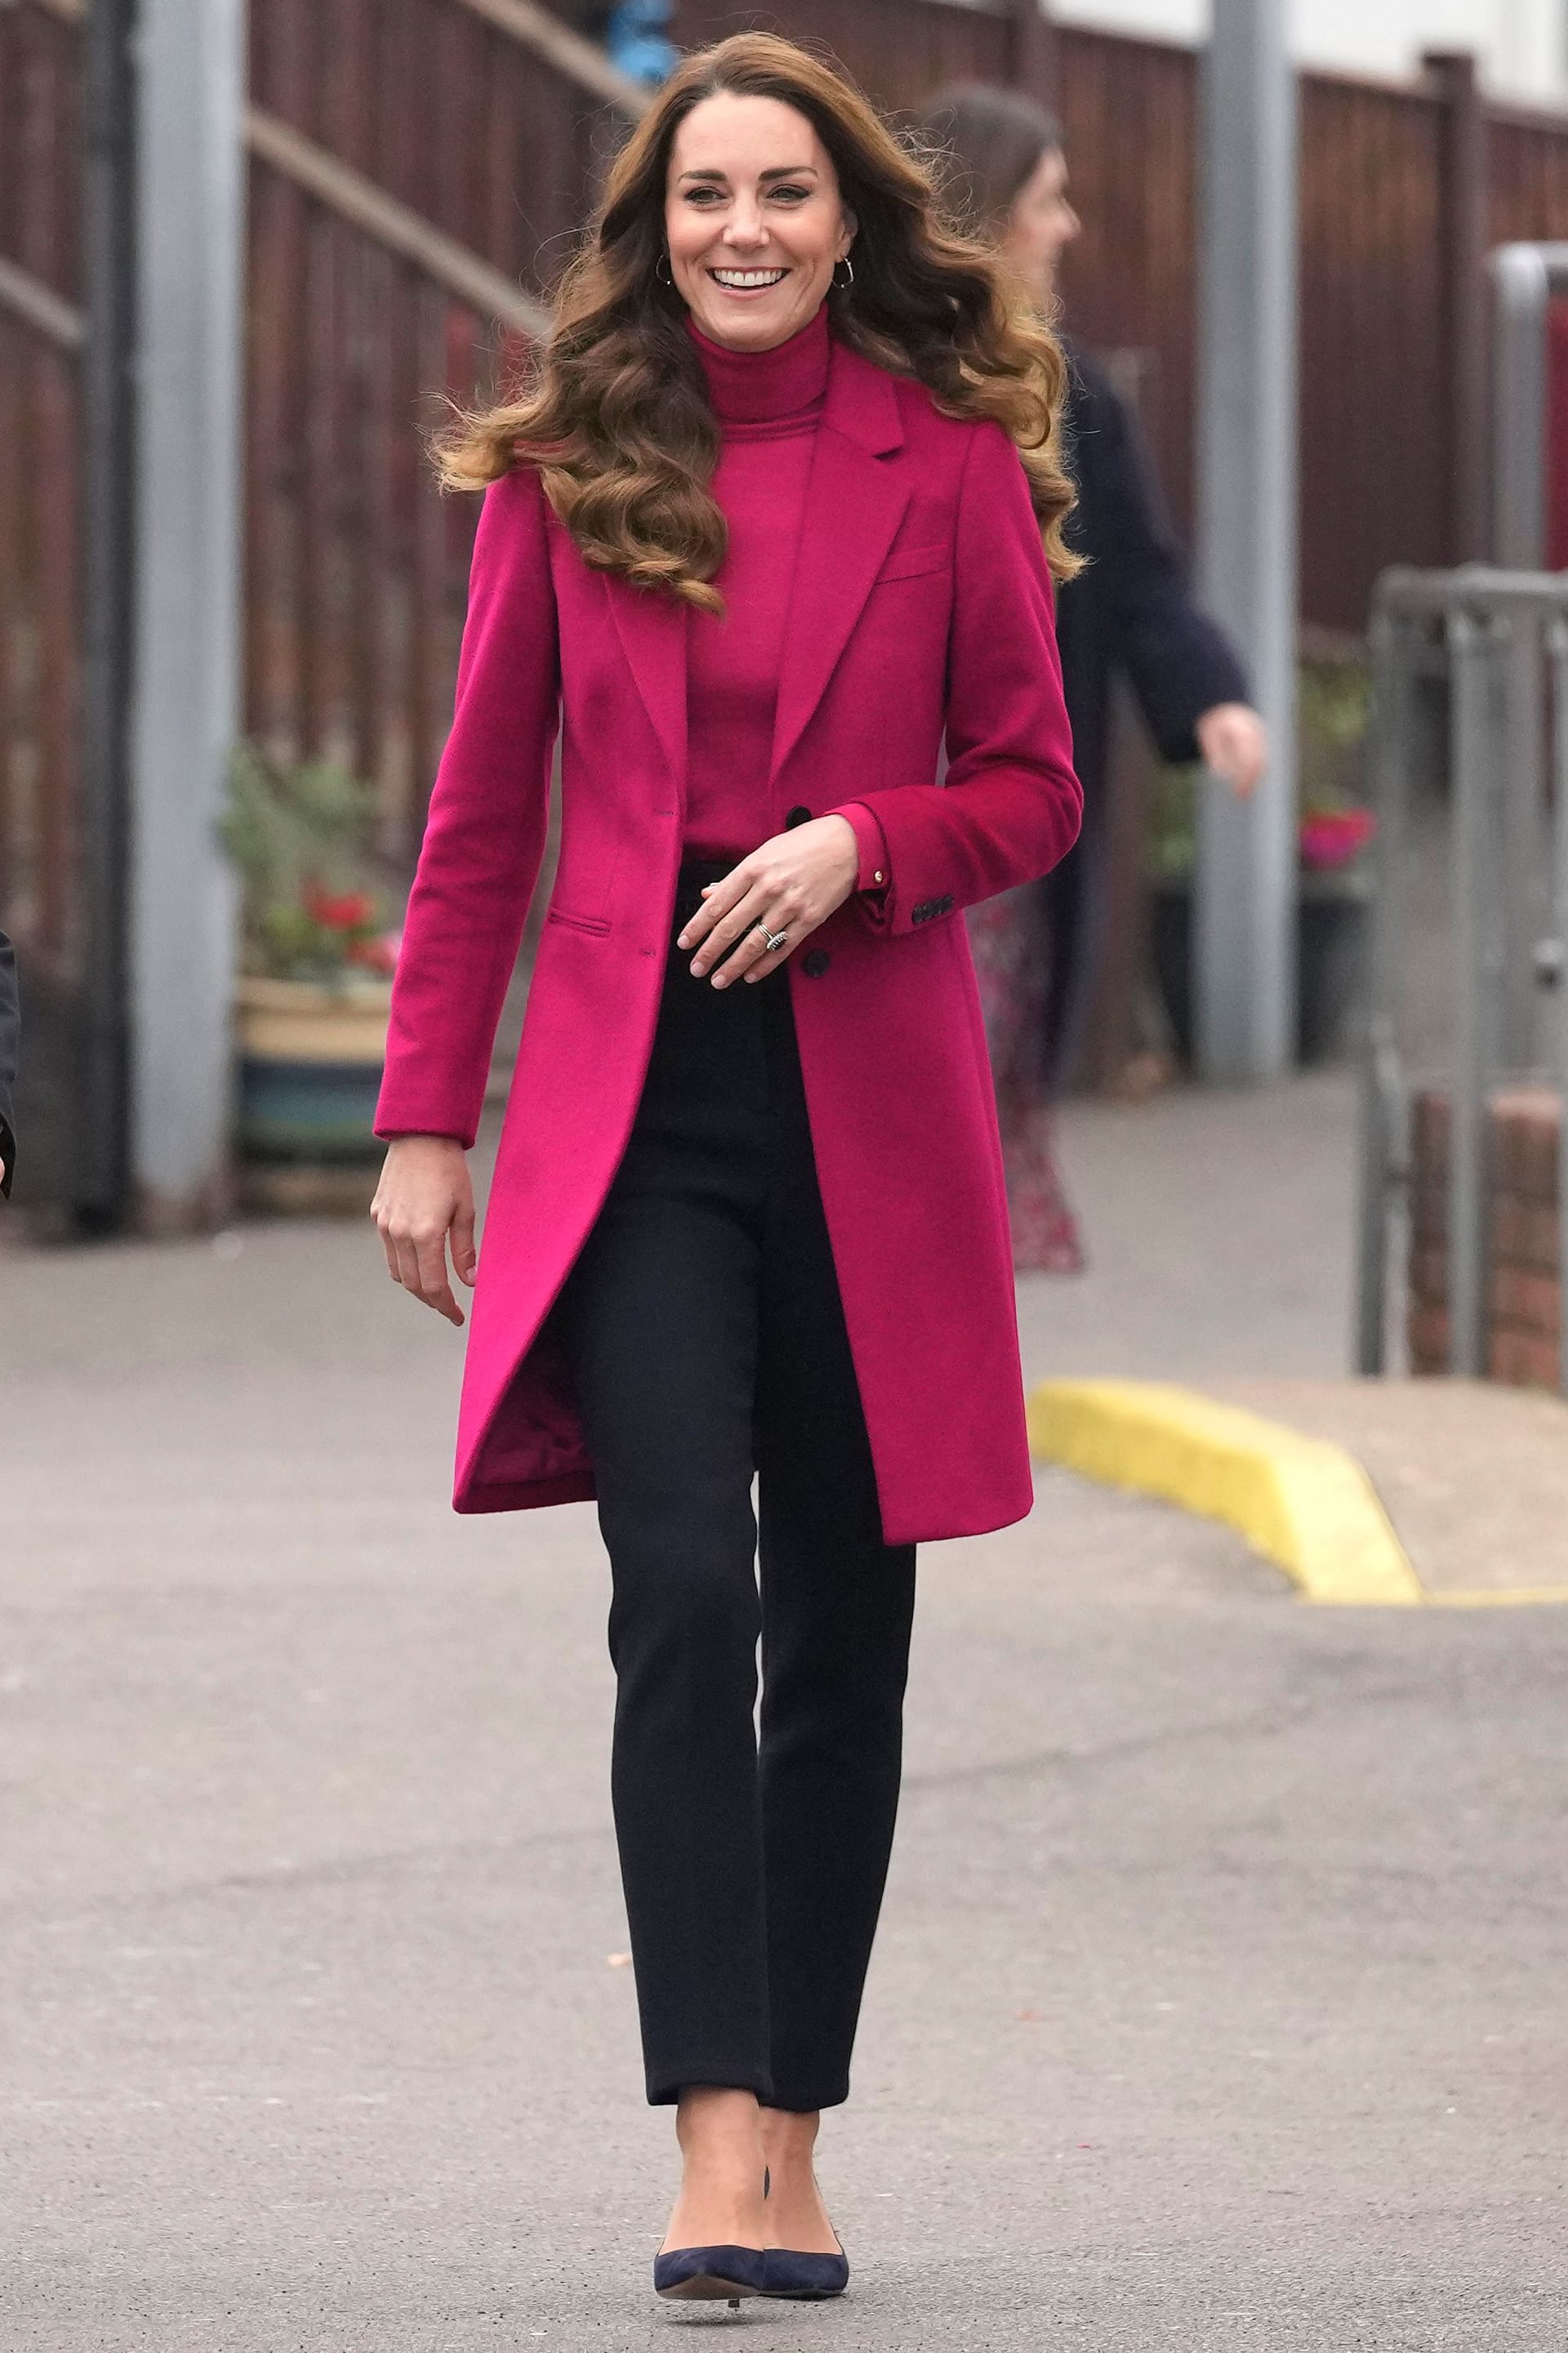 Kate im selben Look, mit anderer Hose, im November 2021 bei einem Termin.